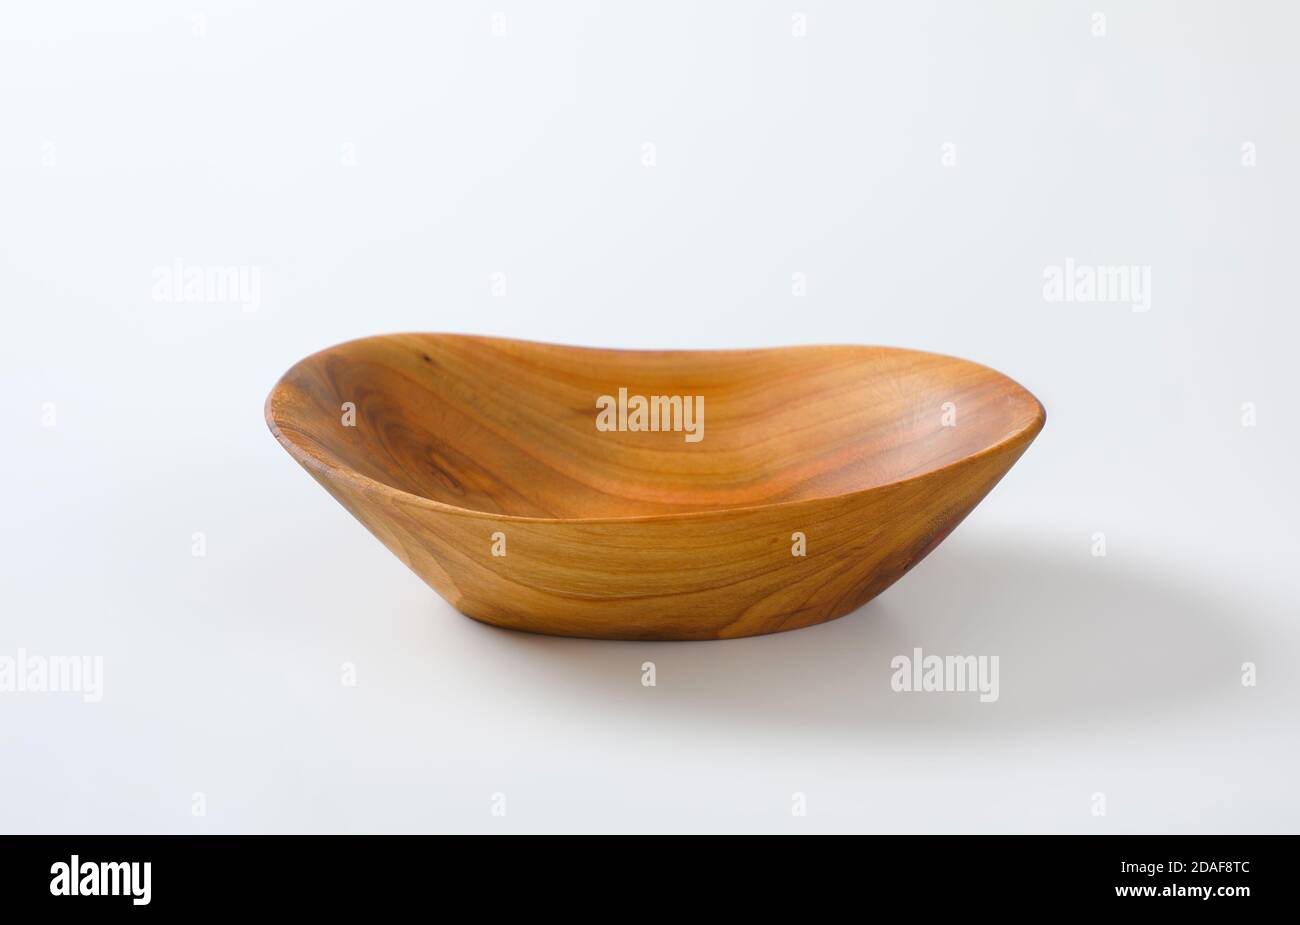 Boat shaped natural wood bowl Stock Photo